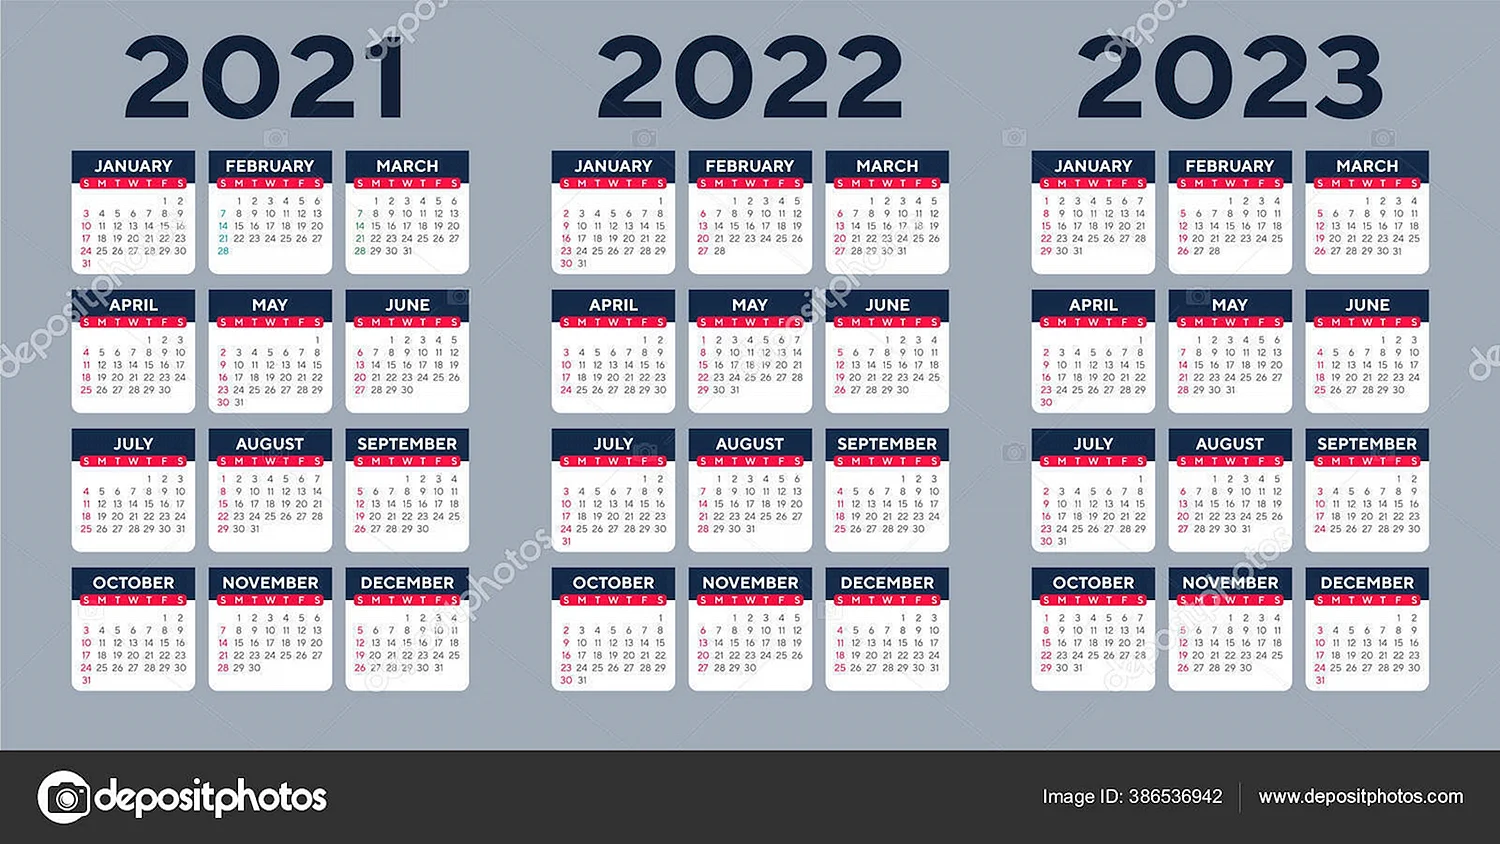 Календарь на 3 года 2021 2022 2023